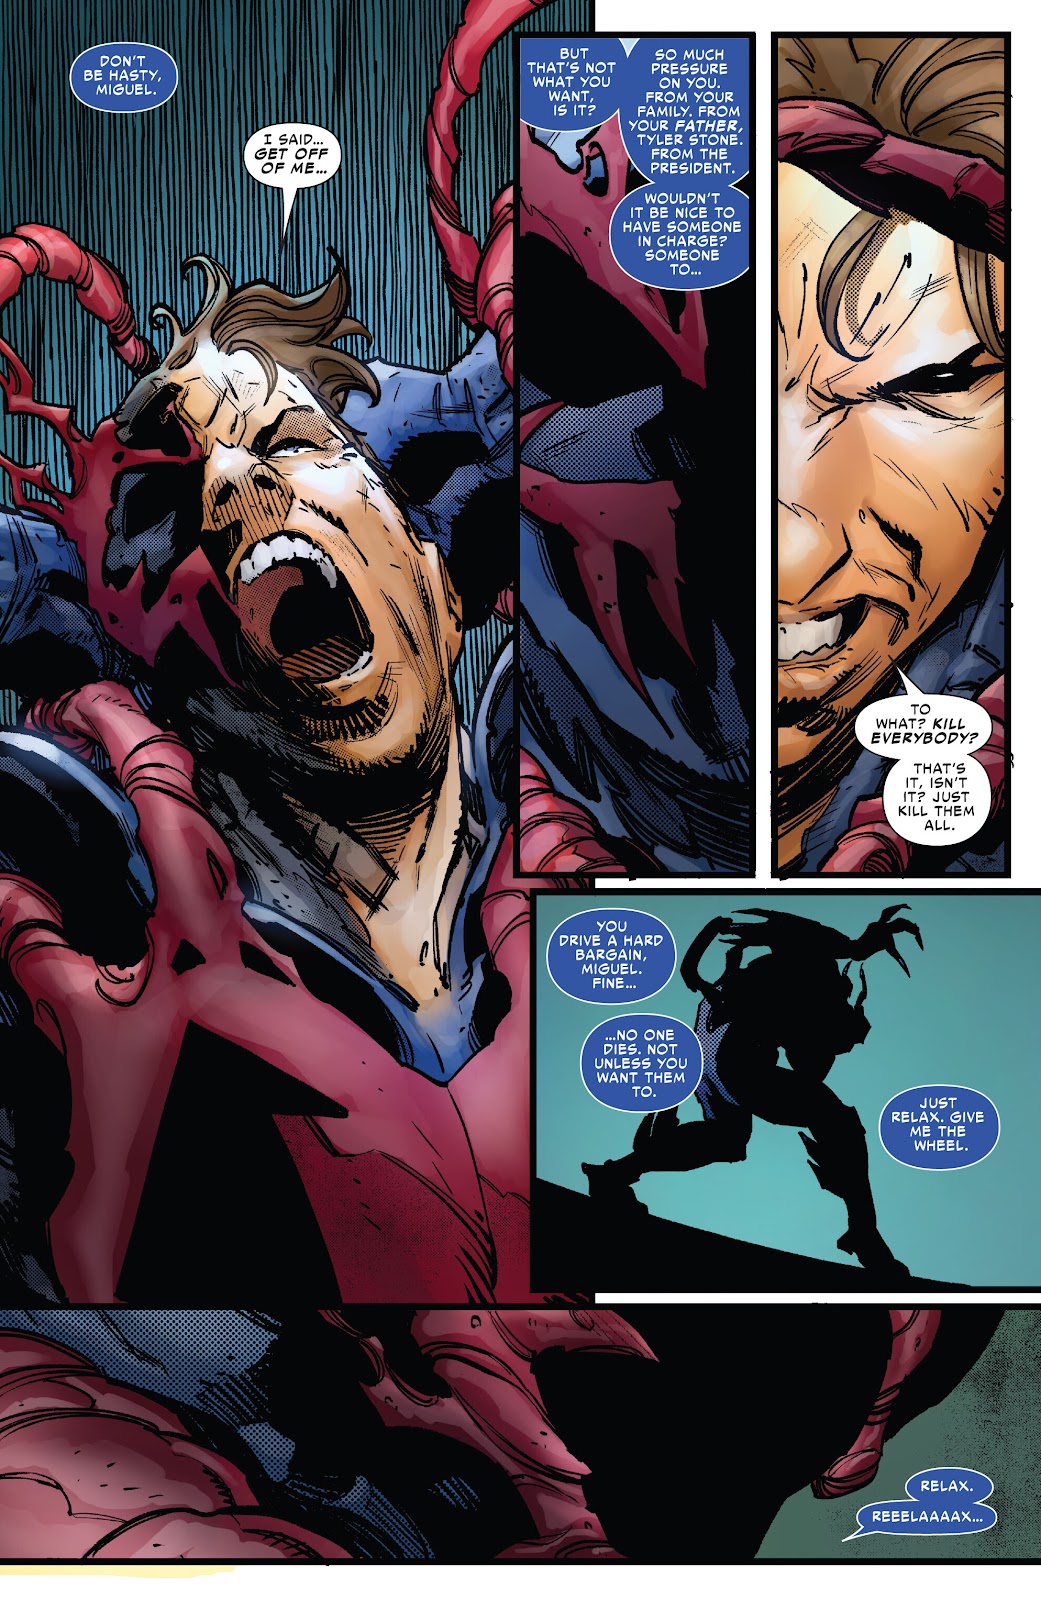 Symbiote Spider-Man 2099 issue 2 - Page 9